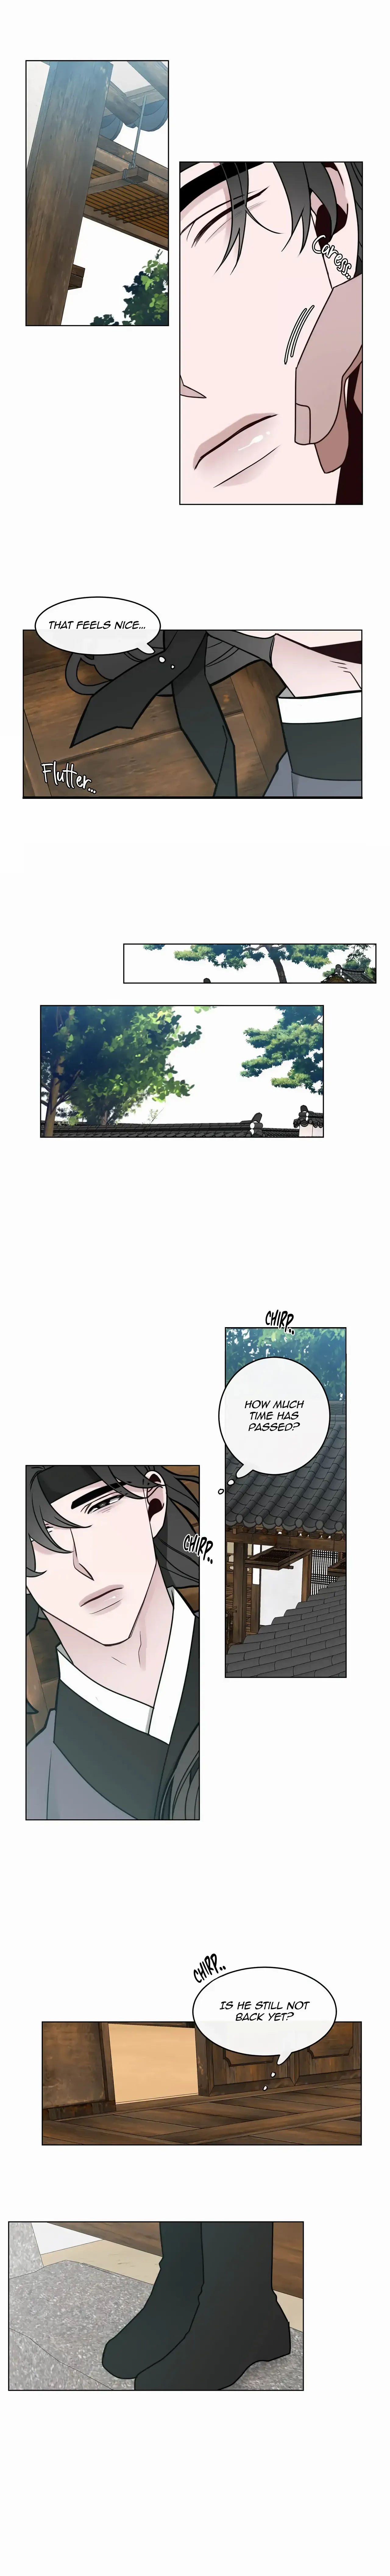 Shinsujeon - Page 2